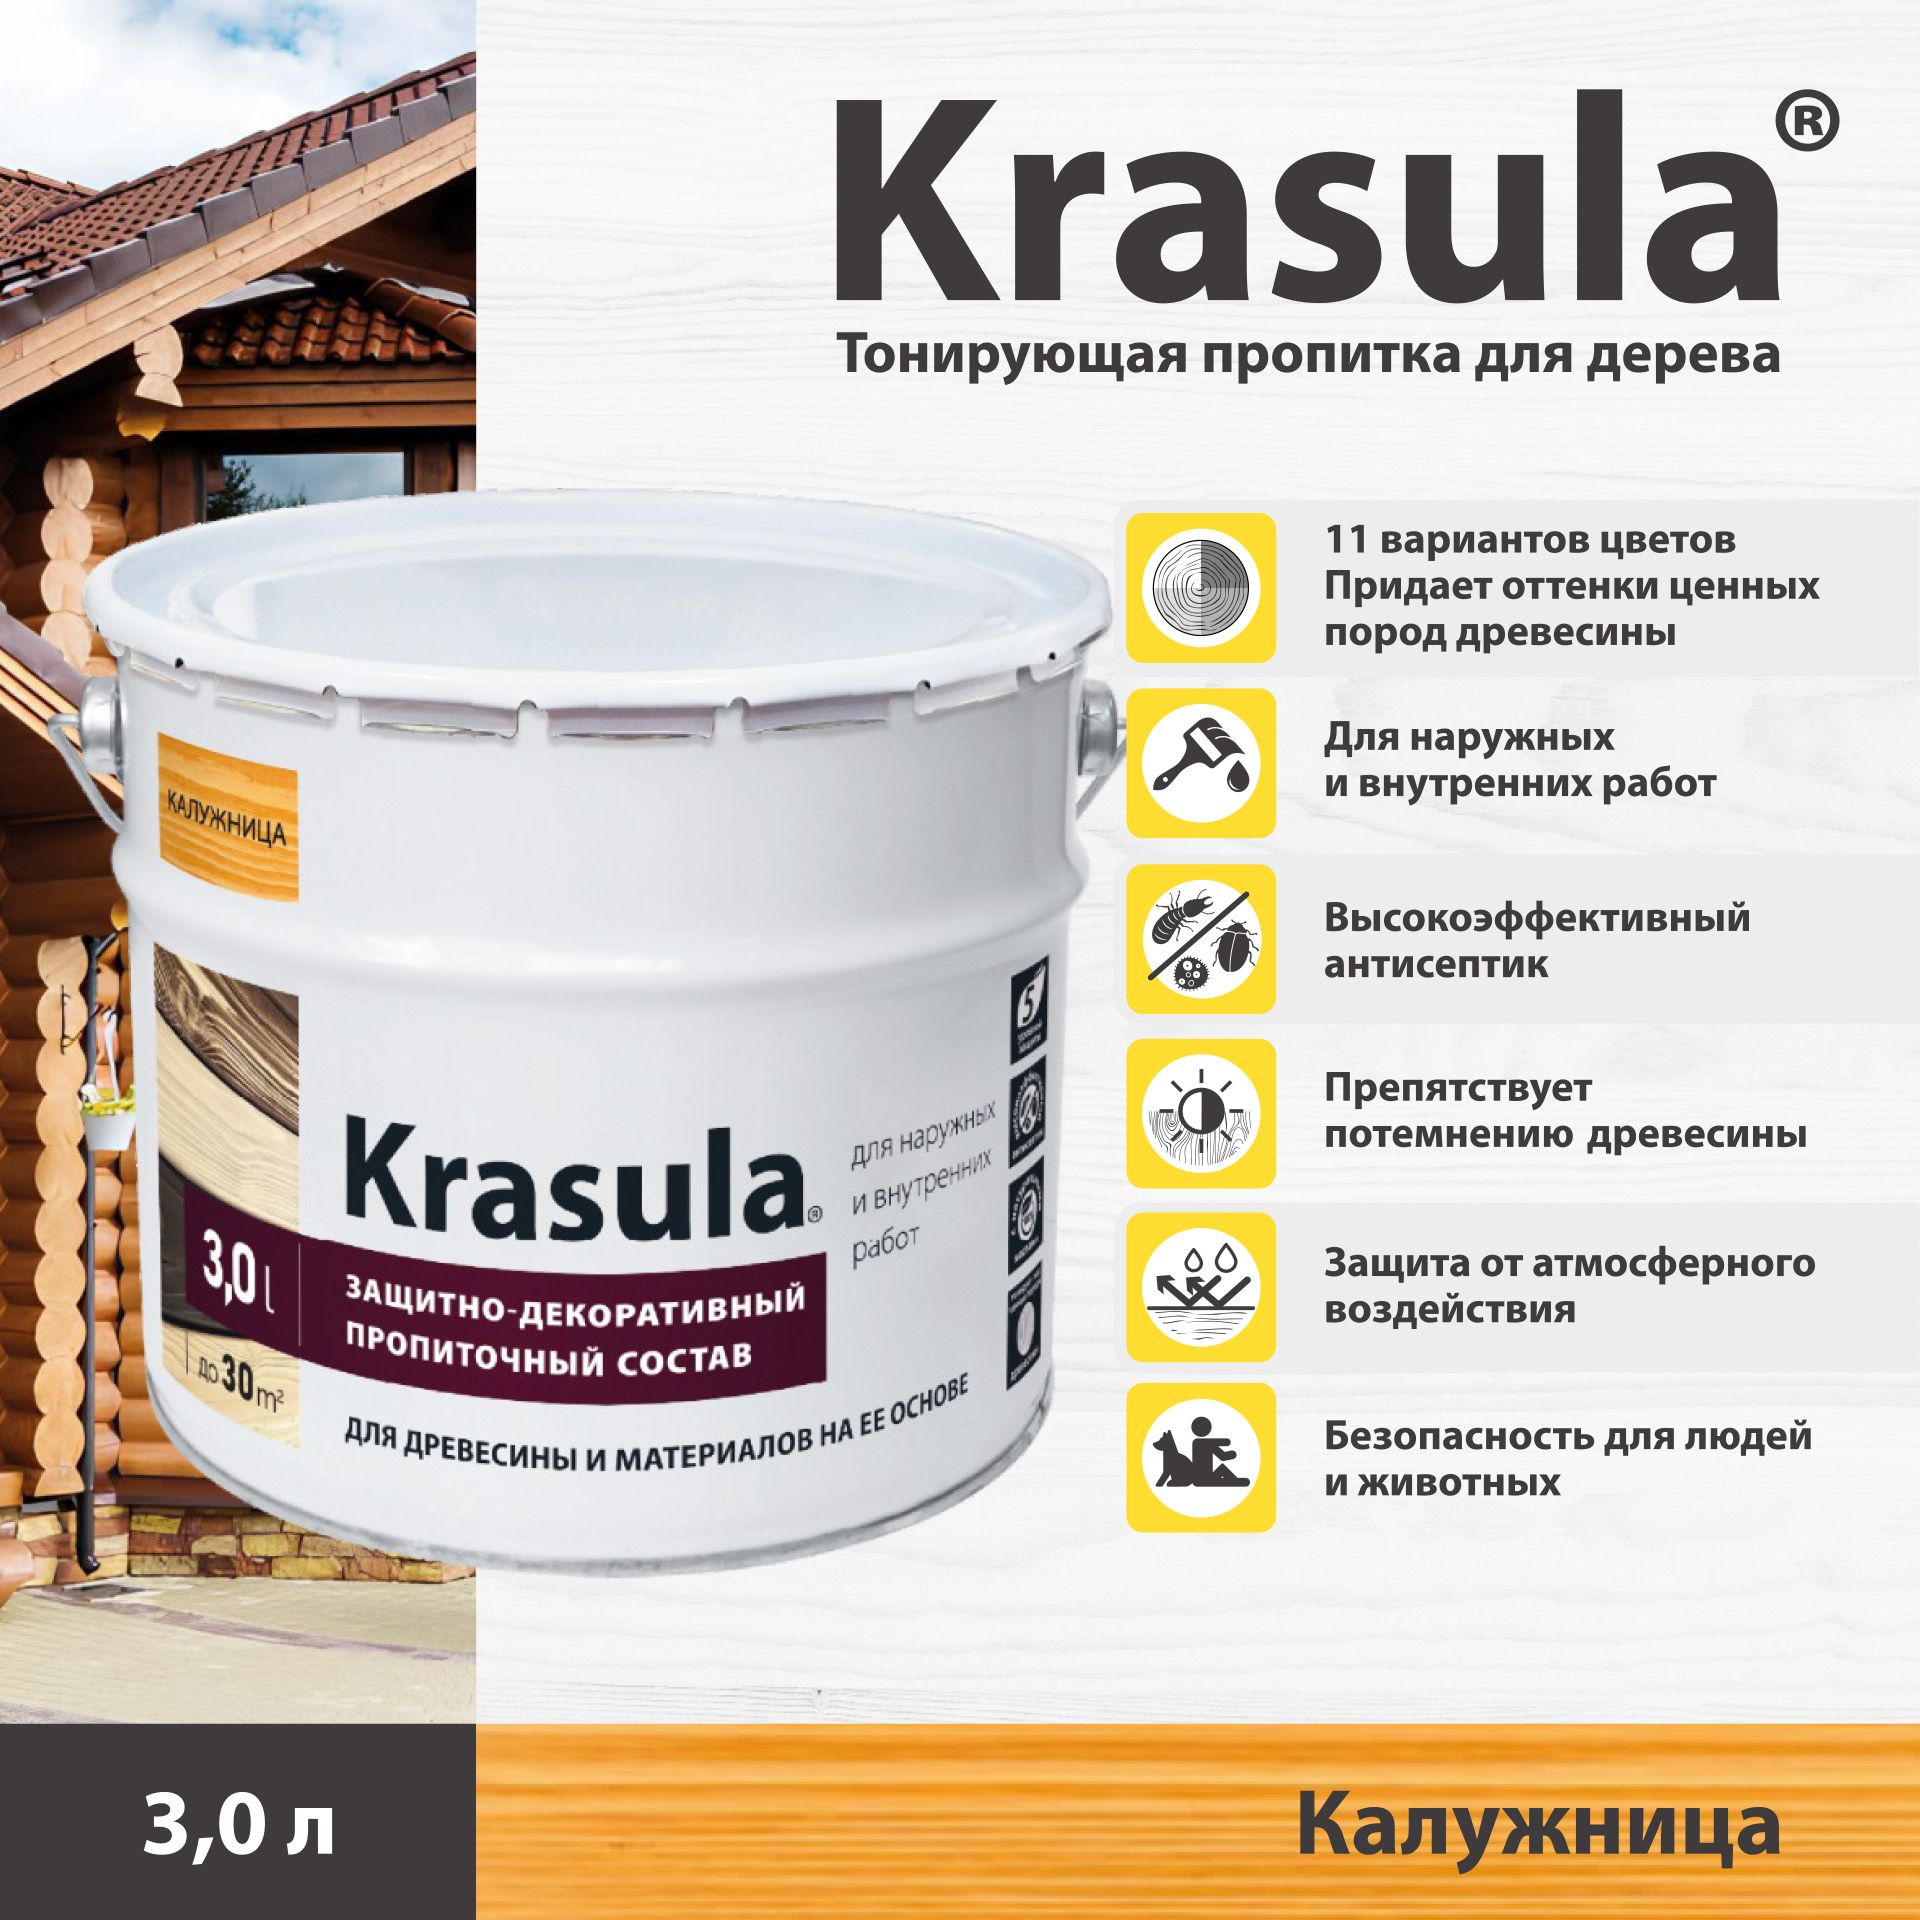 ТонирующаяпропиткадлядереваKrasula/3л/Калужница,защитно-декоративныйсоставдлядревесиныКрасула